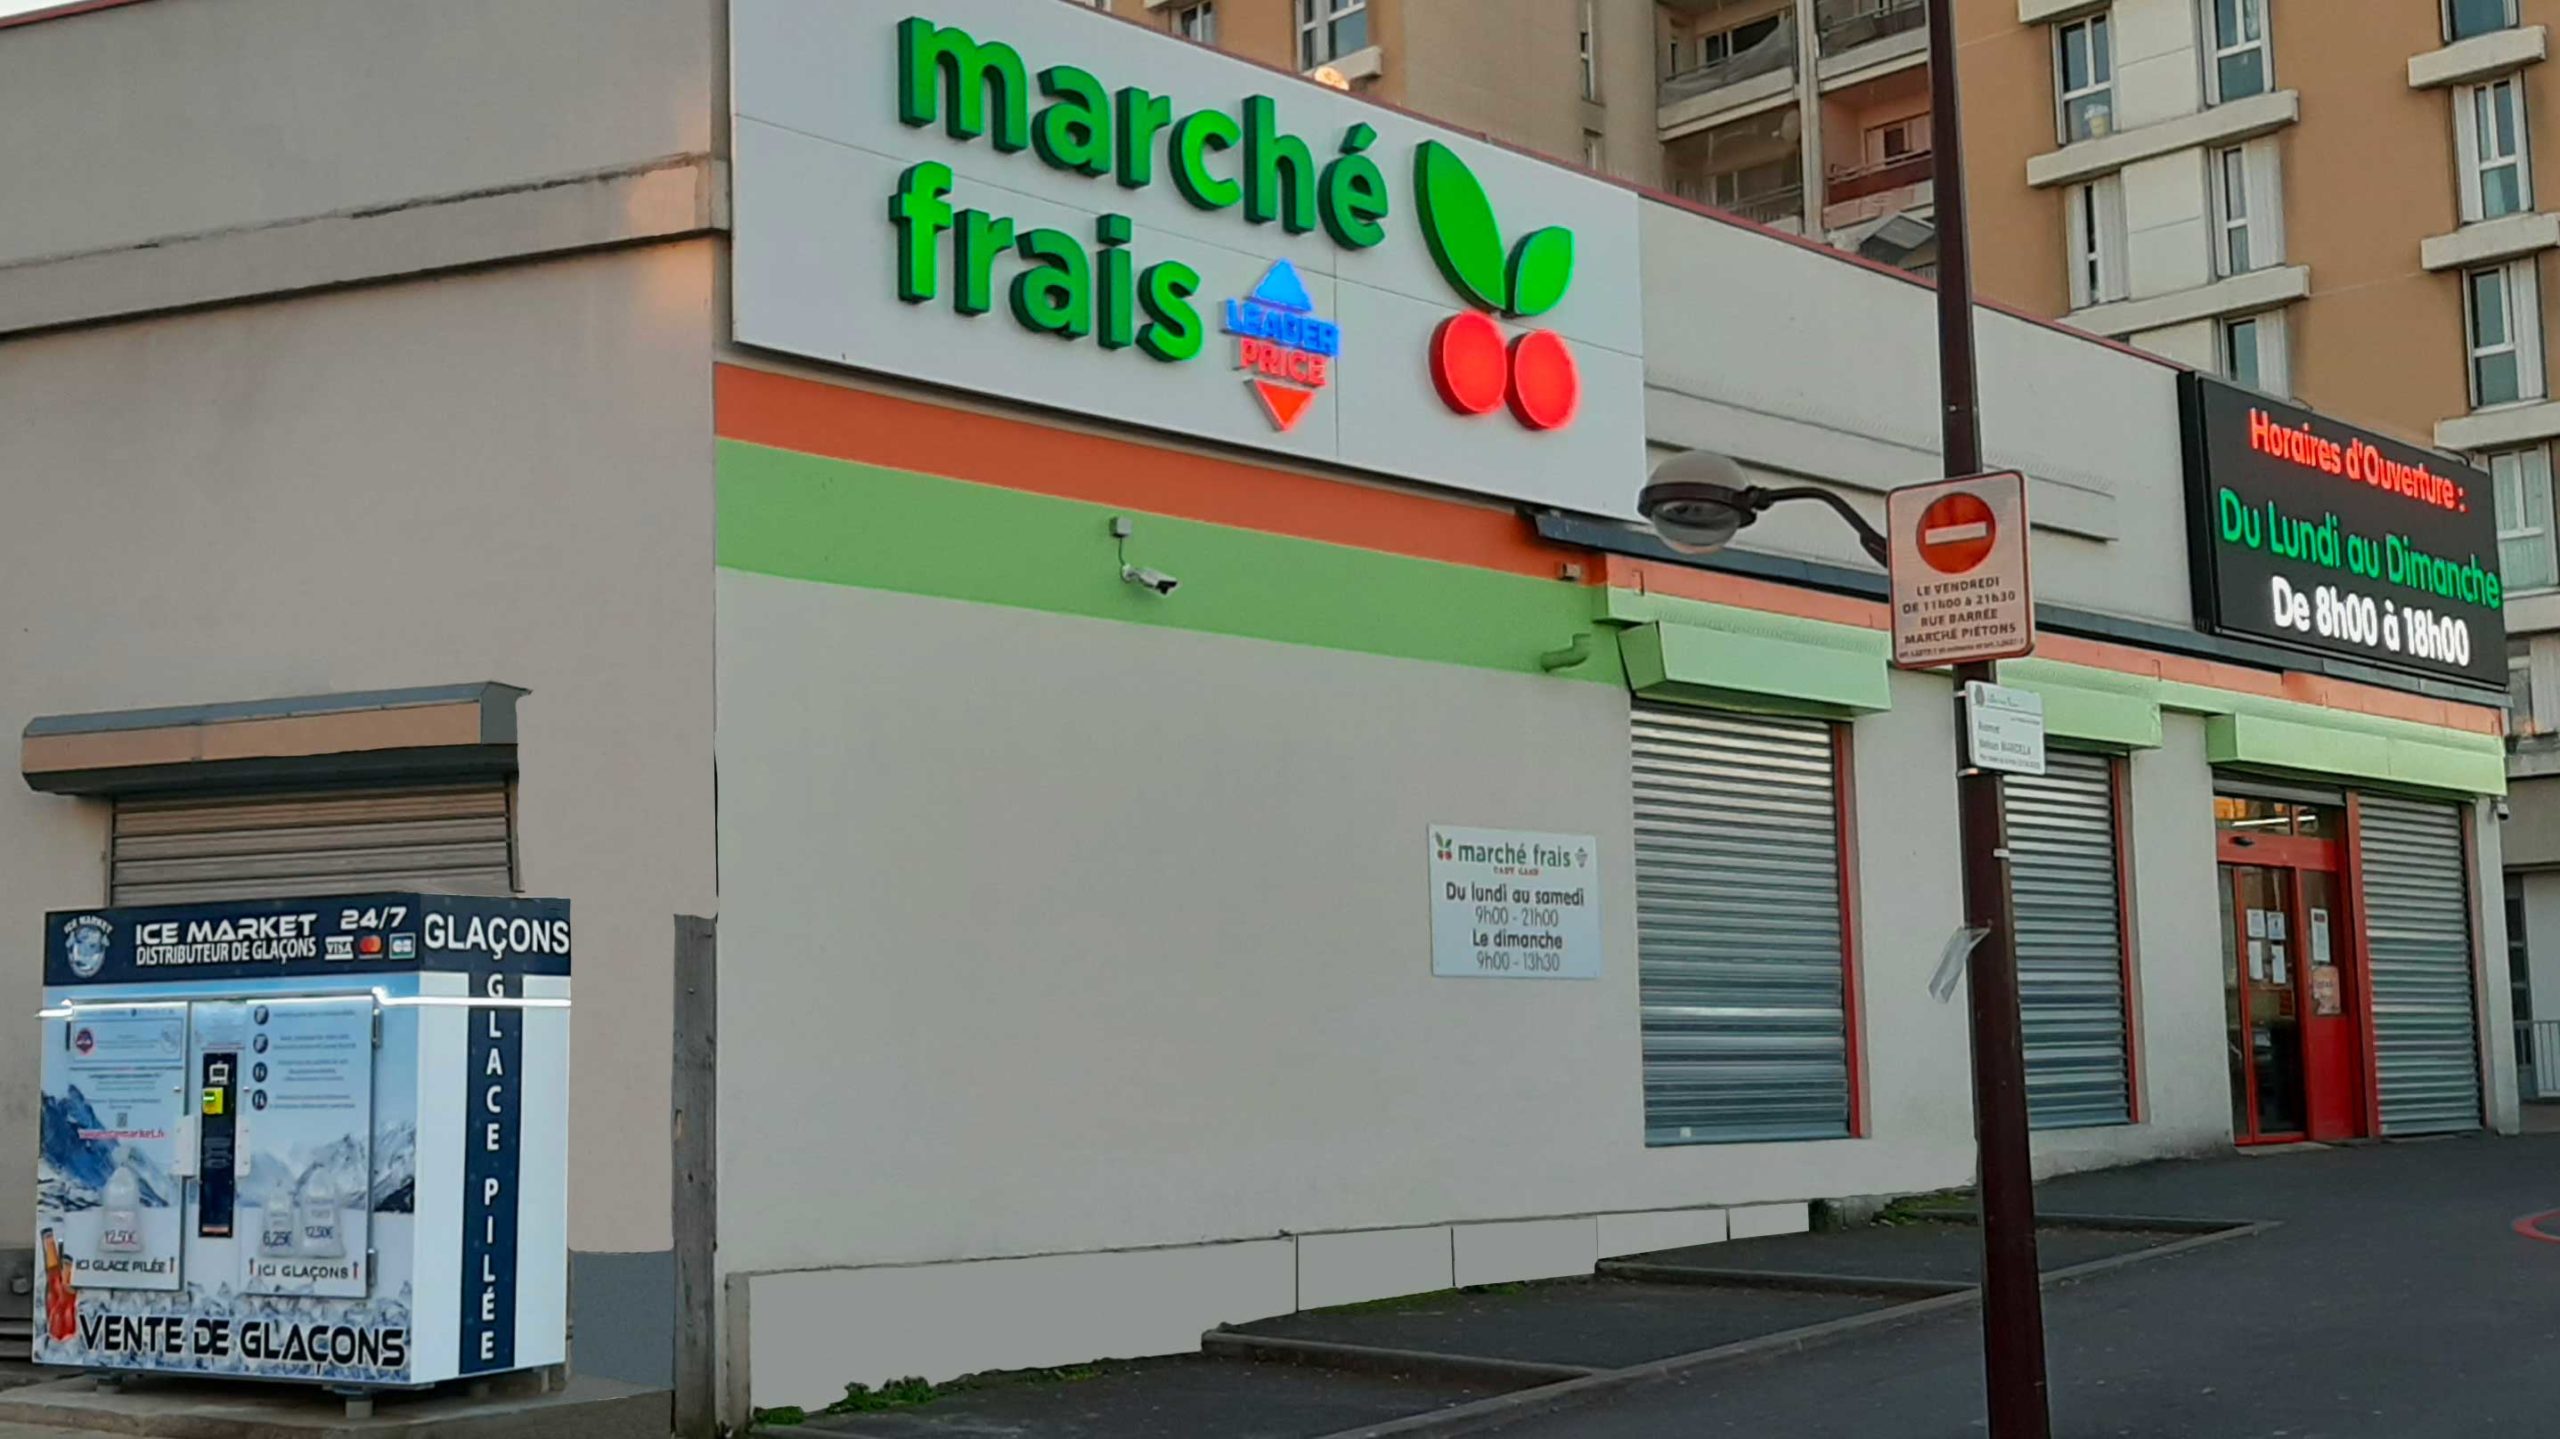 Distribteur-automatique-de-glacons-et-glace-pilee-marche-frais-Leader-Price-Villiers-sur-Marne